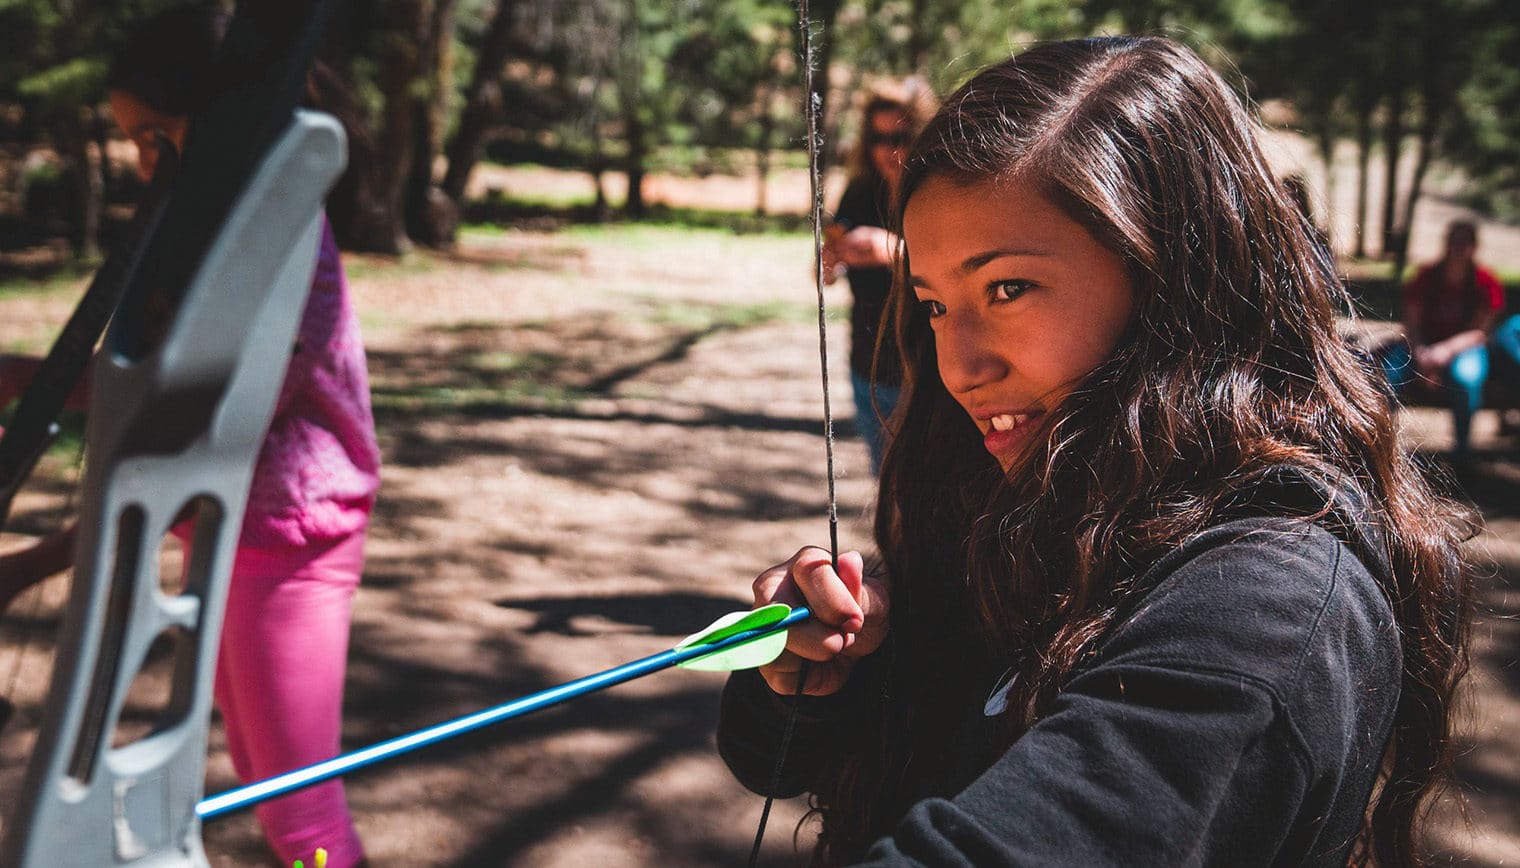 A girl holding a bow and arrow.